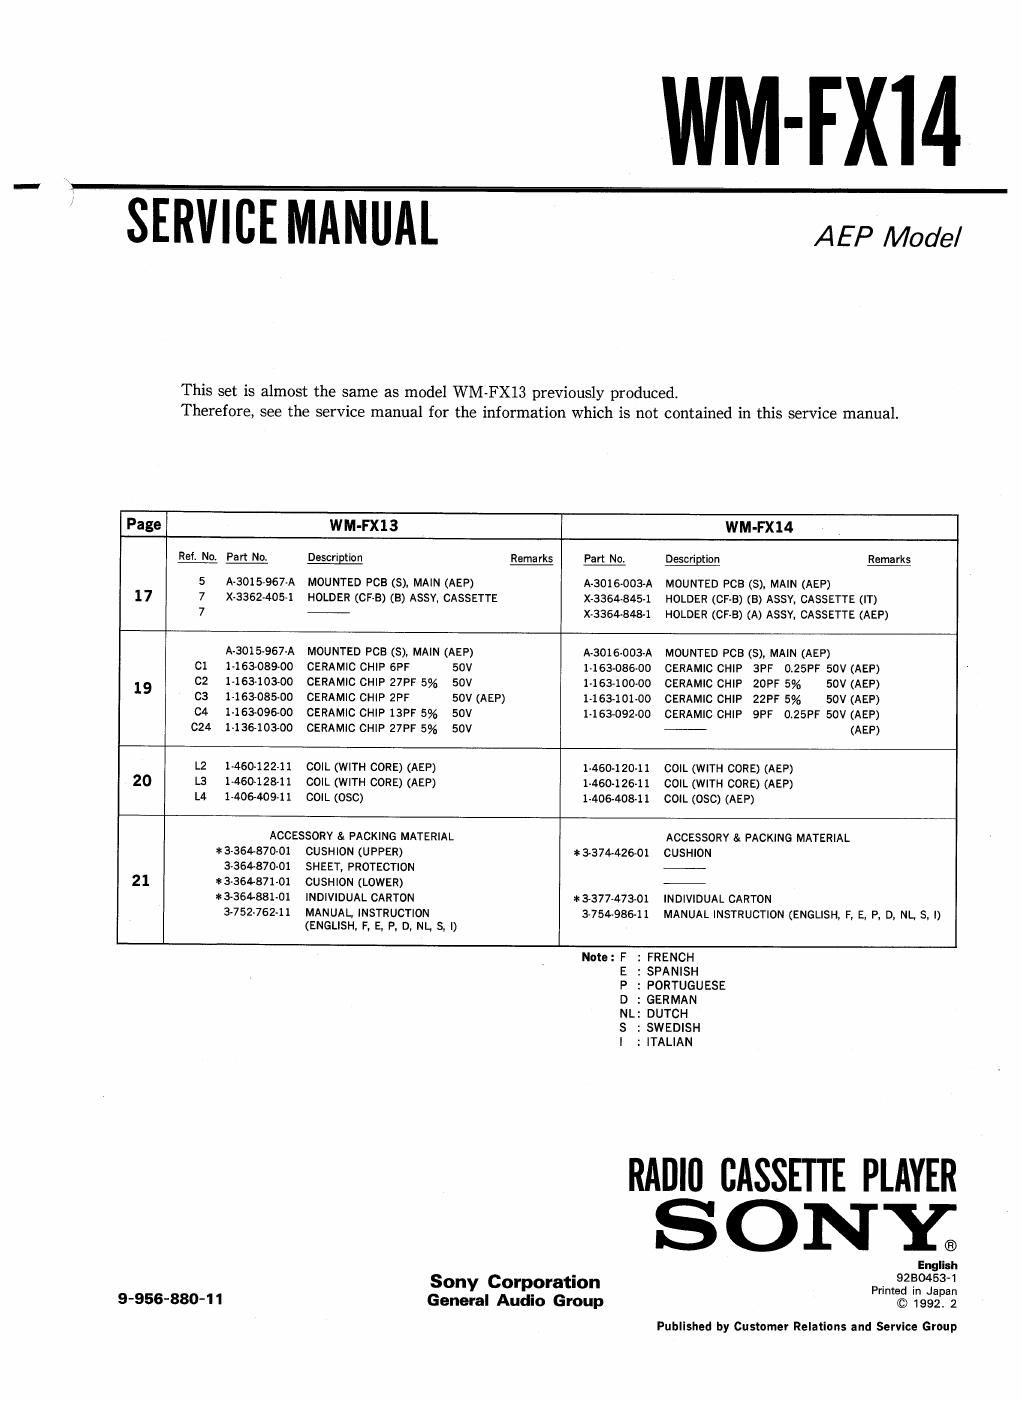 sony wm fx 14 service manual